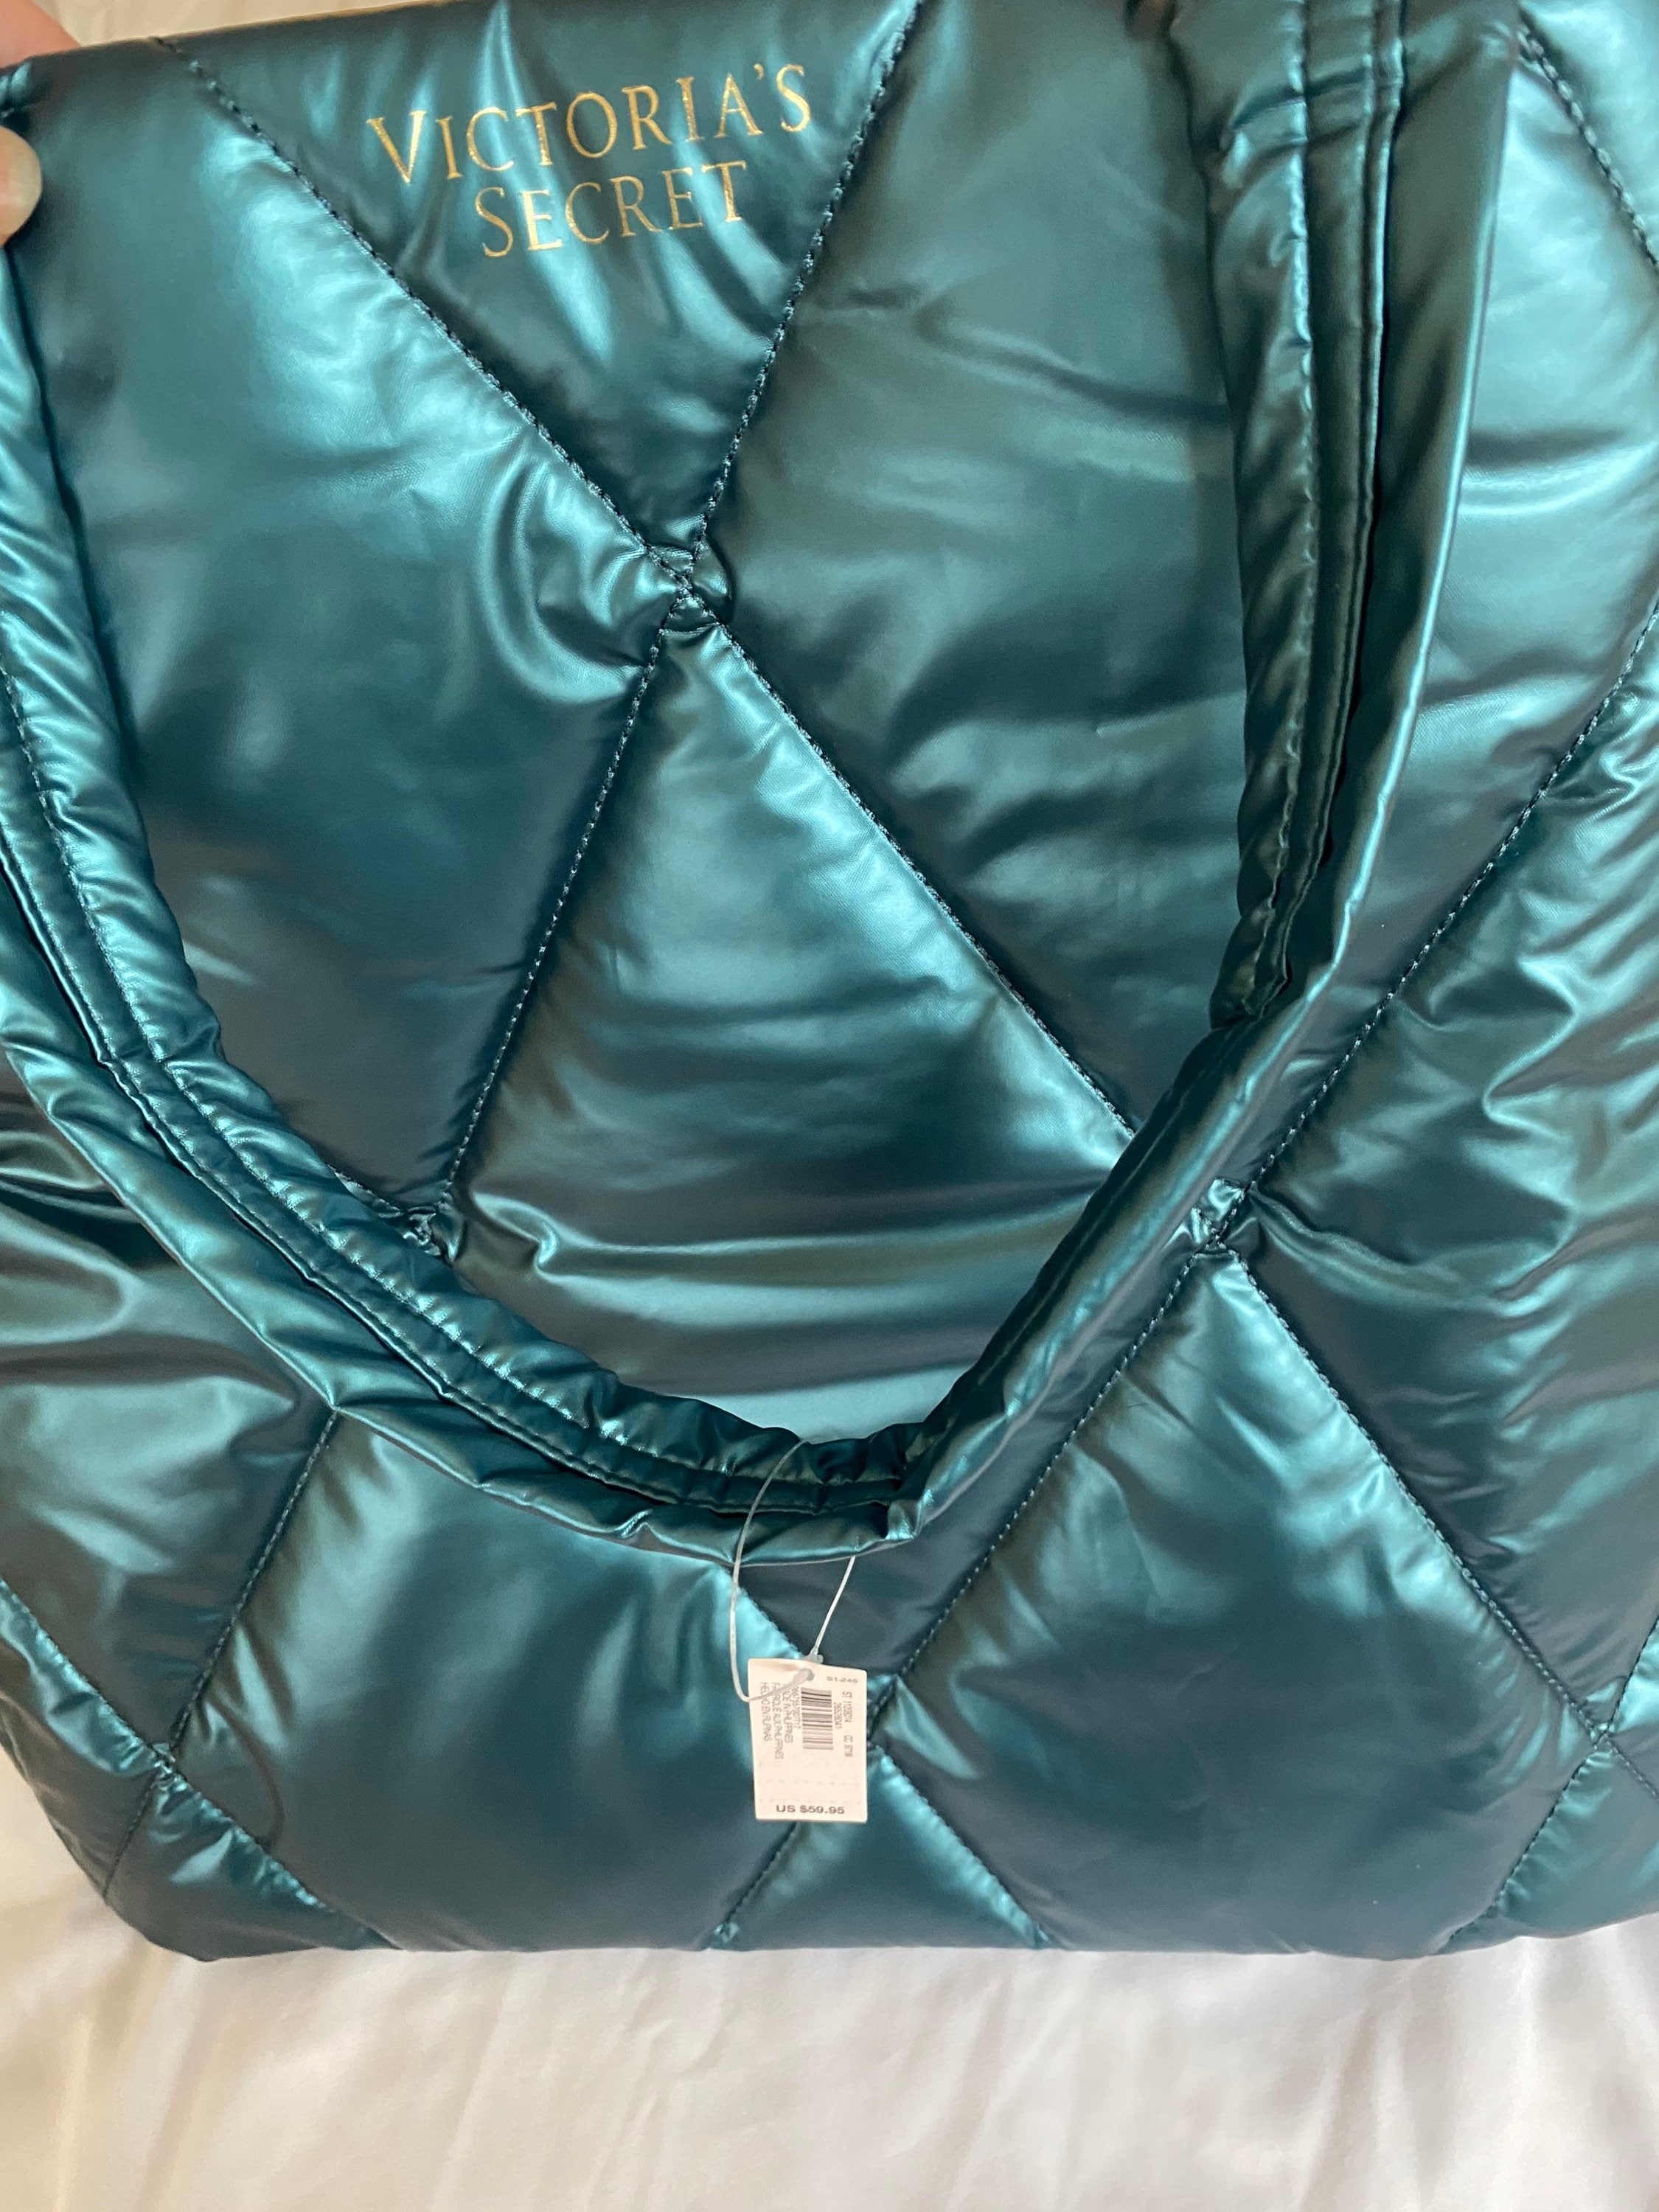 New VTG Victoria Secrets LG Shoulder Bag Black Double Straps LG Striped  Pockets